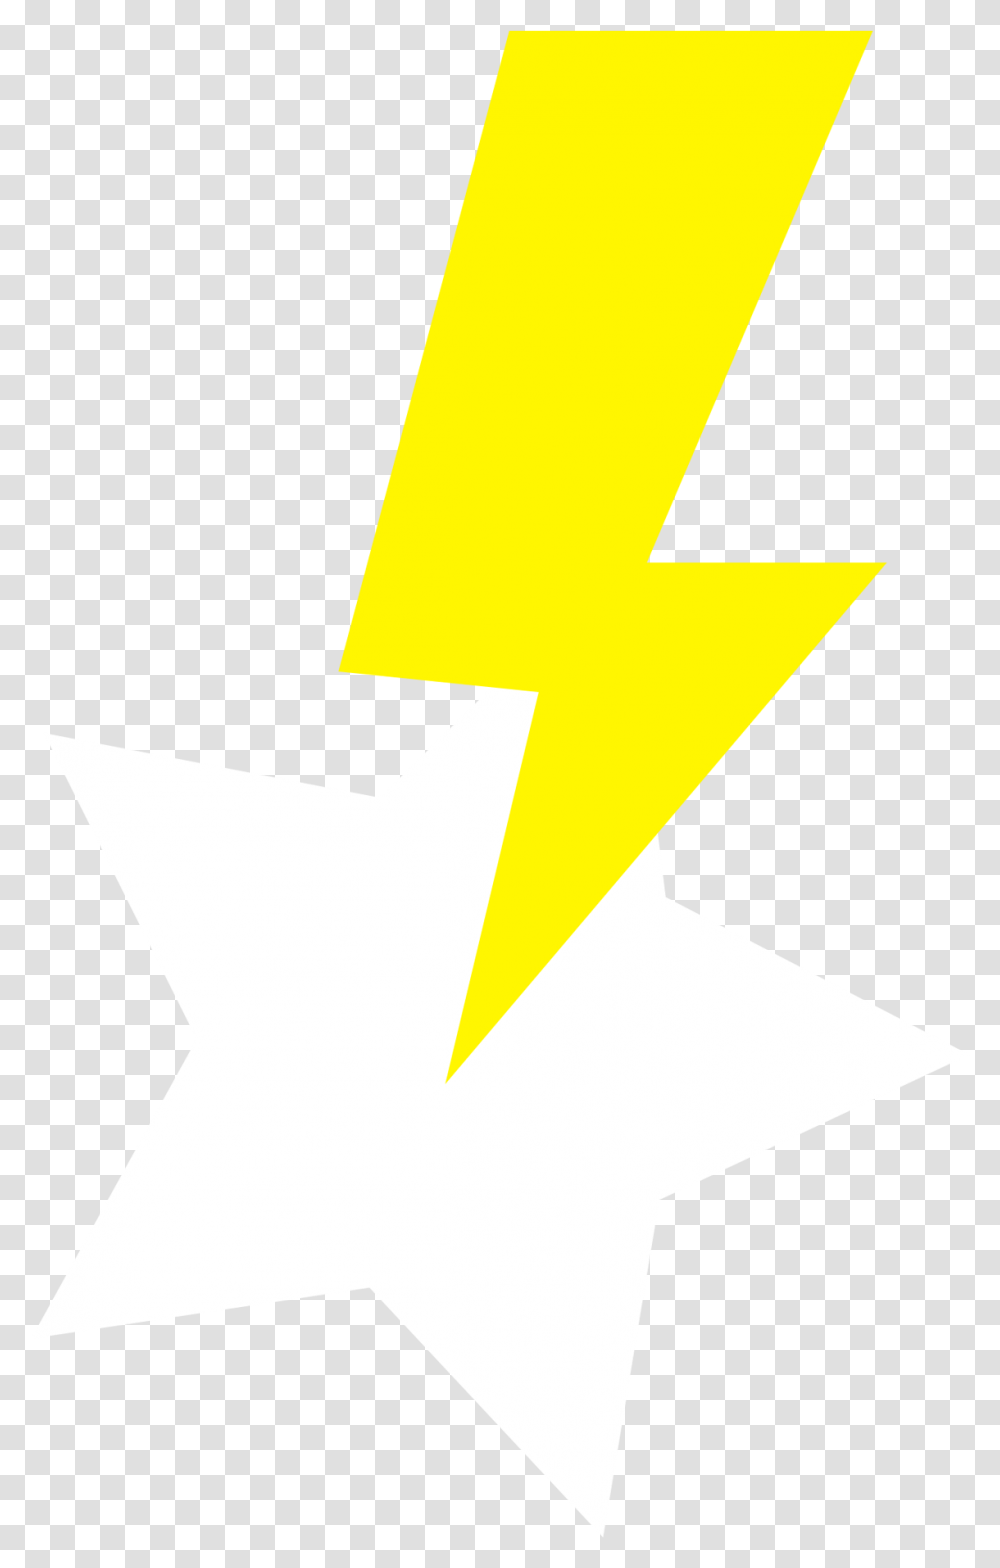 Free Lightning Flash Download Dot, Symbol, Star Symbol, Cross, Number Transparent Png